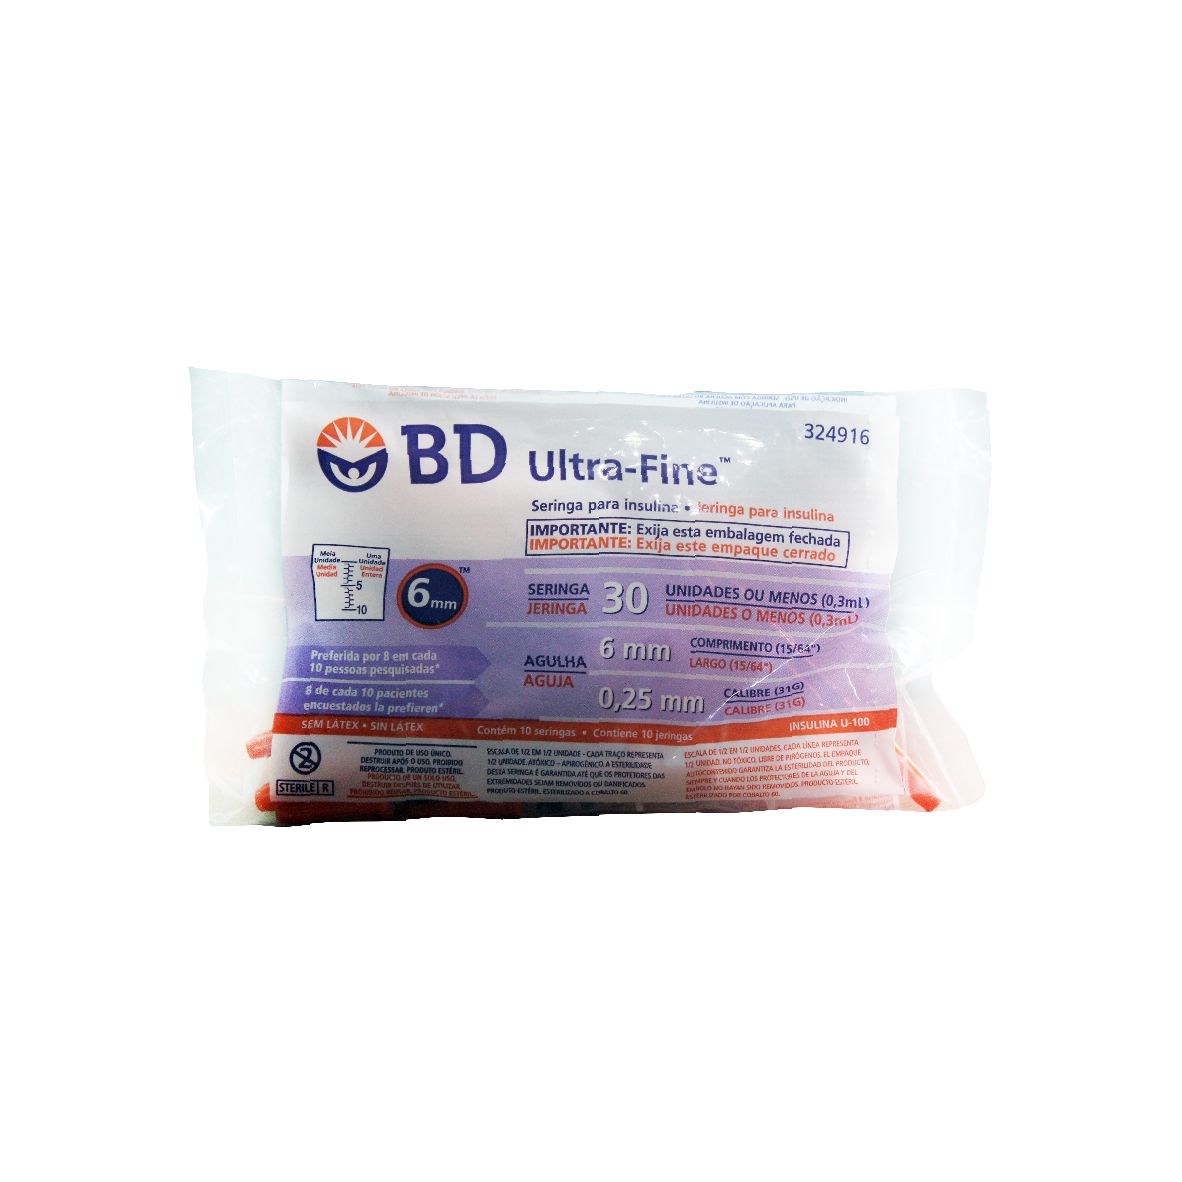 SERINGA BD ULTRA FINE 30UI 6MM 10 UNIDADES - Farmácia Central do Diabético